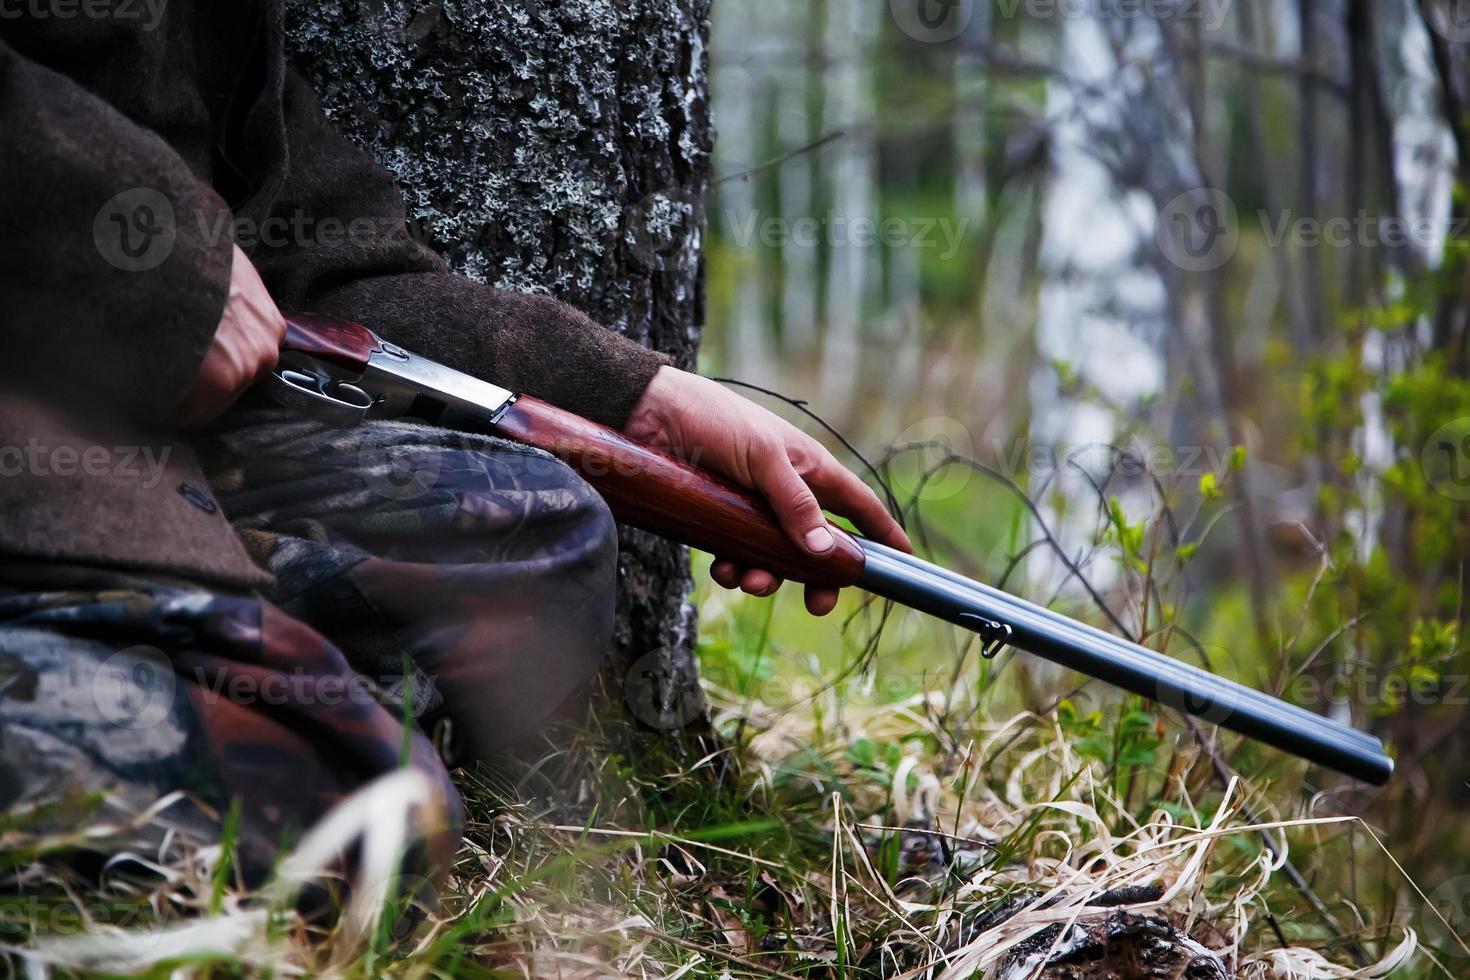 fucile da caccia avvicinamento nel il mani di un' cacciatore seduta nel aspettare. in attesa per gioco foto